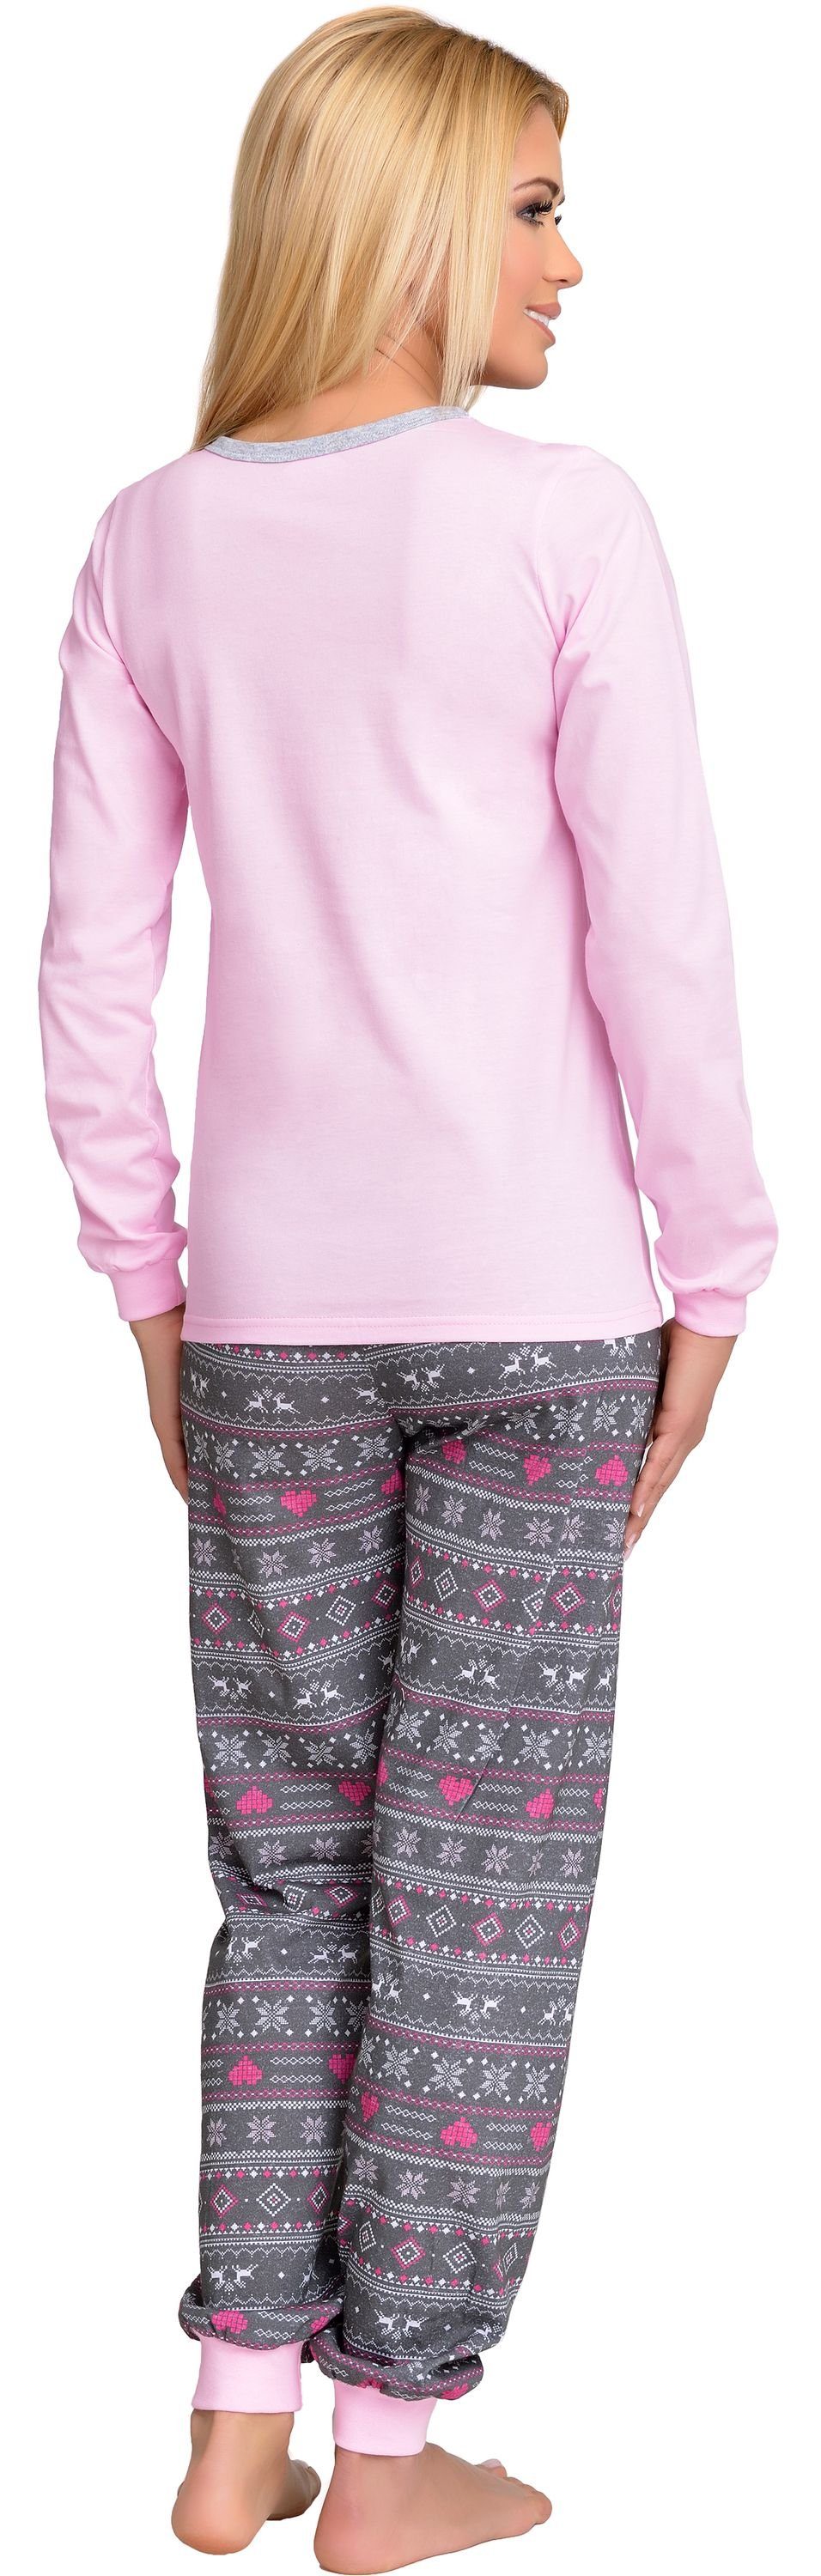 Merry Style Schlafanzug MSTR867 Rosa/Graphite Damen Schlafanzug